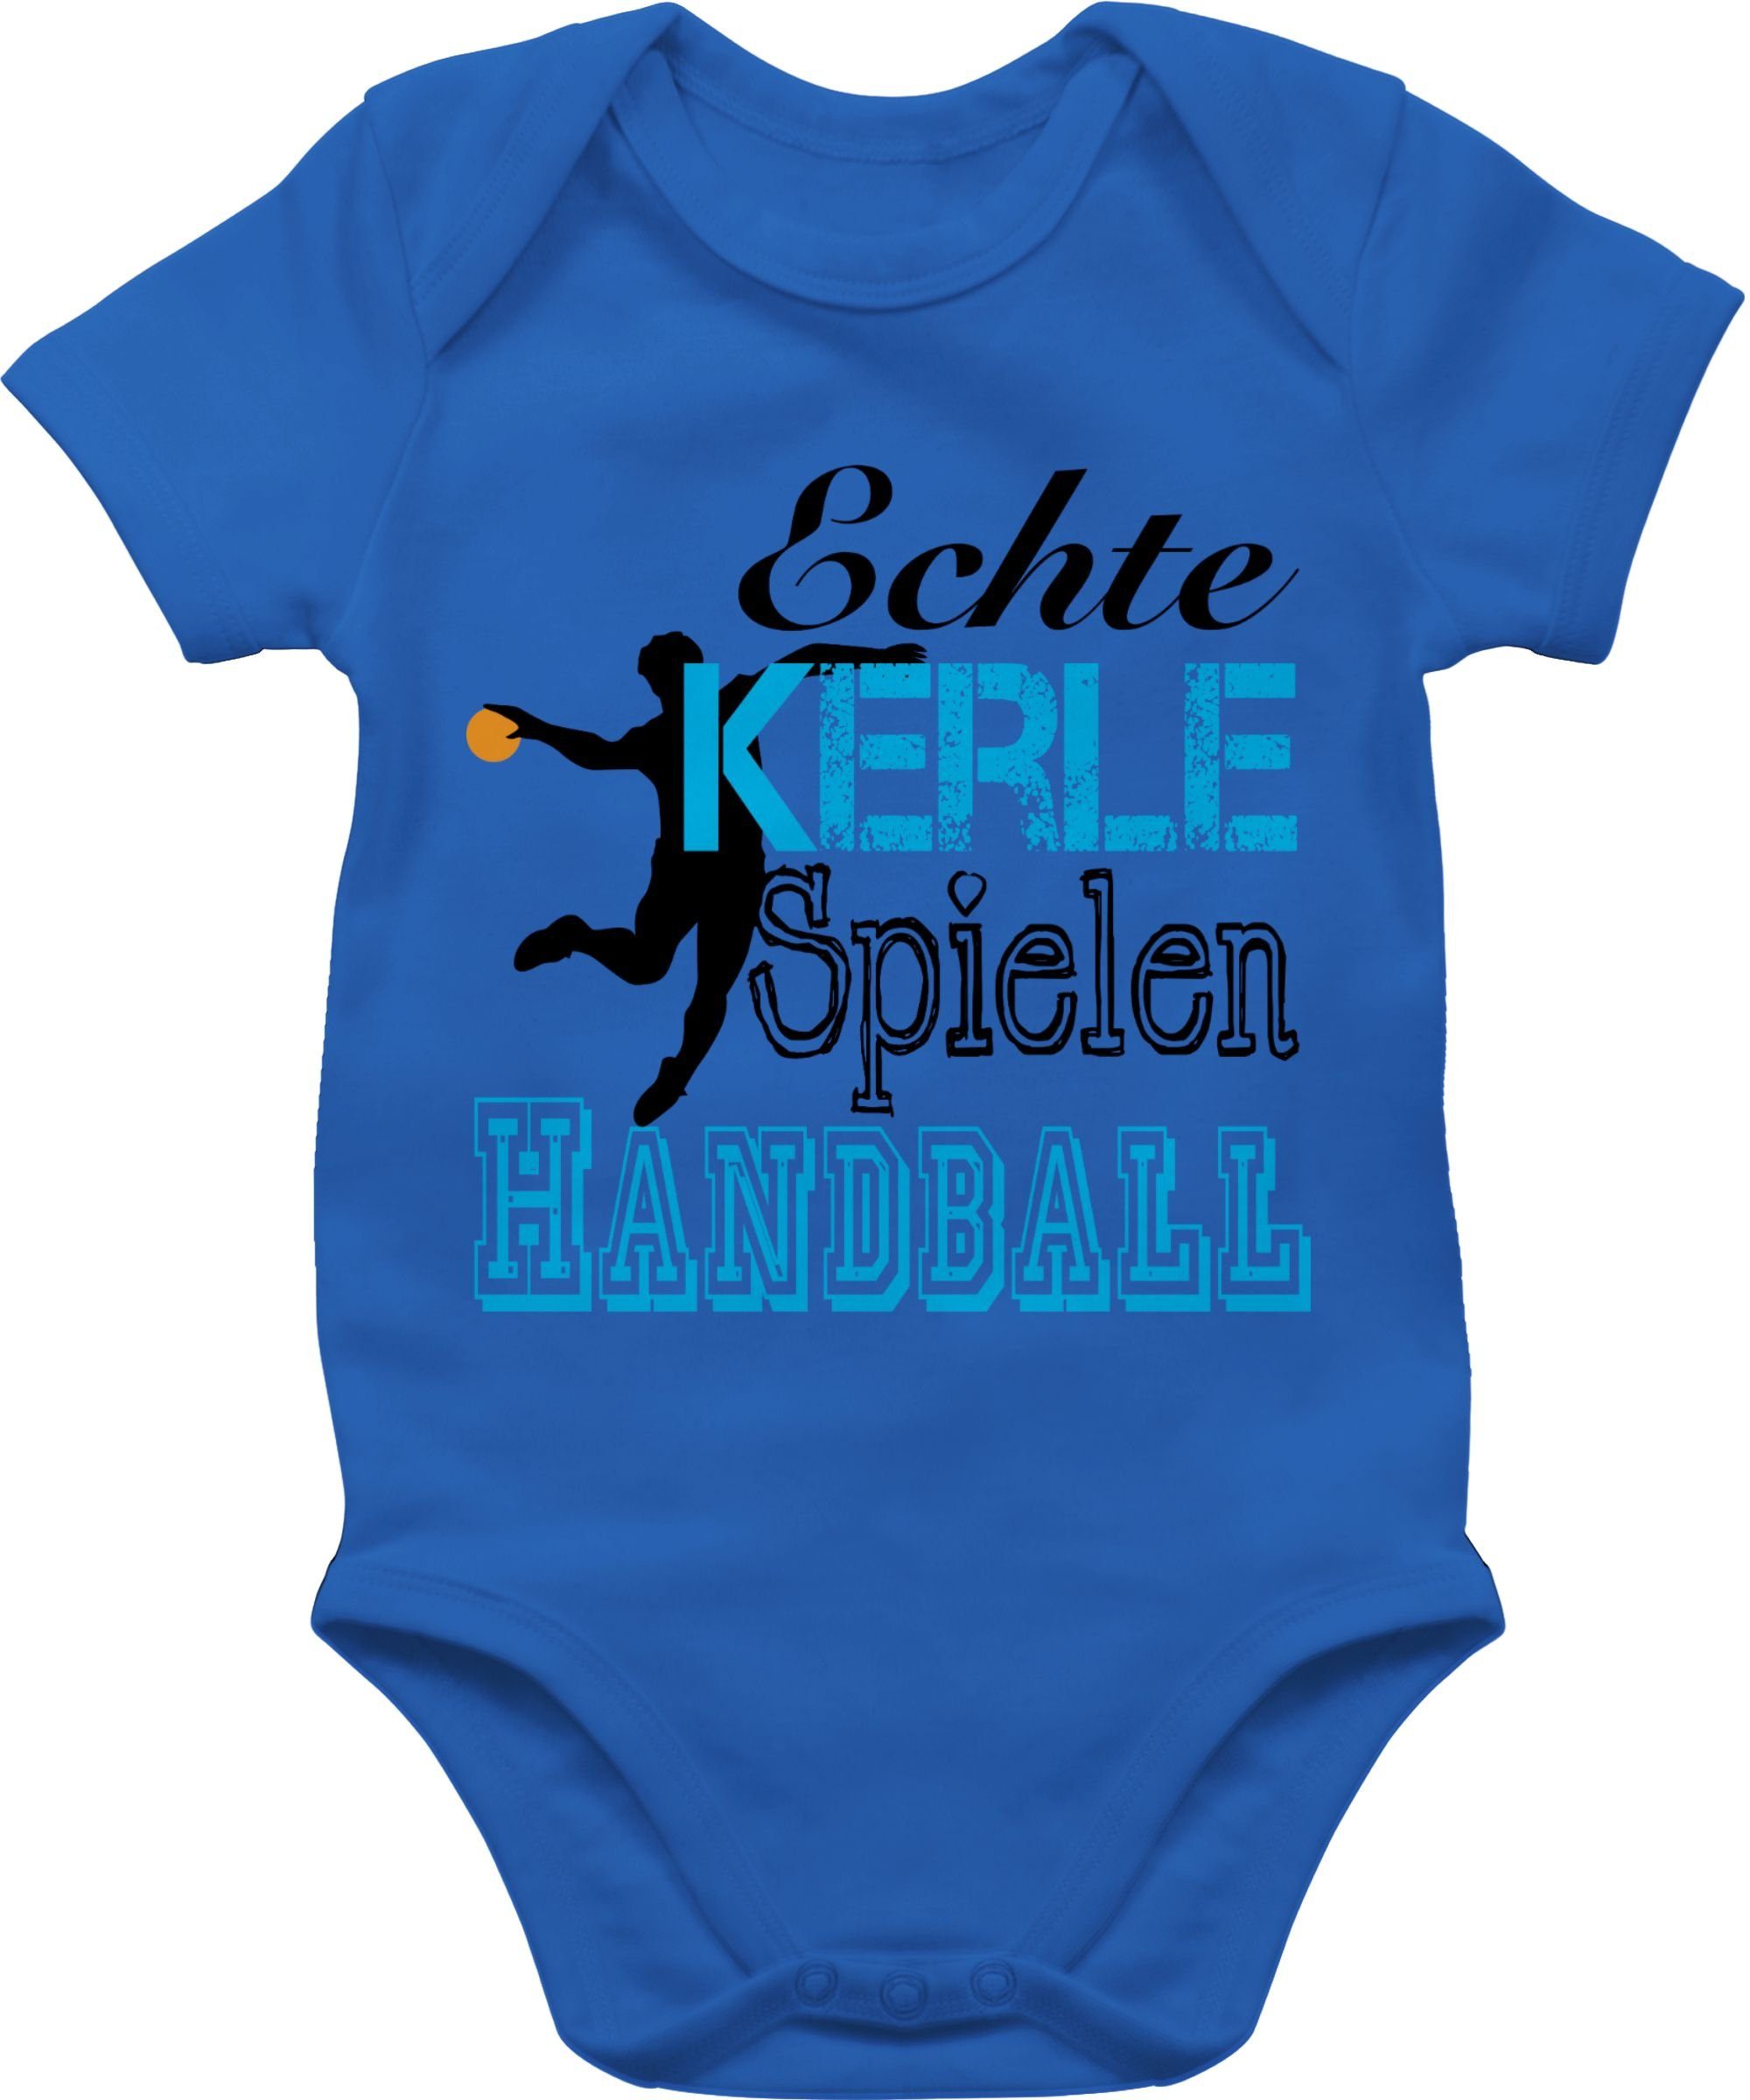 Shirtracer Shirtbody Echte Kerle Spielen Handball Sport & Bewegung Baby 1 Royalblau